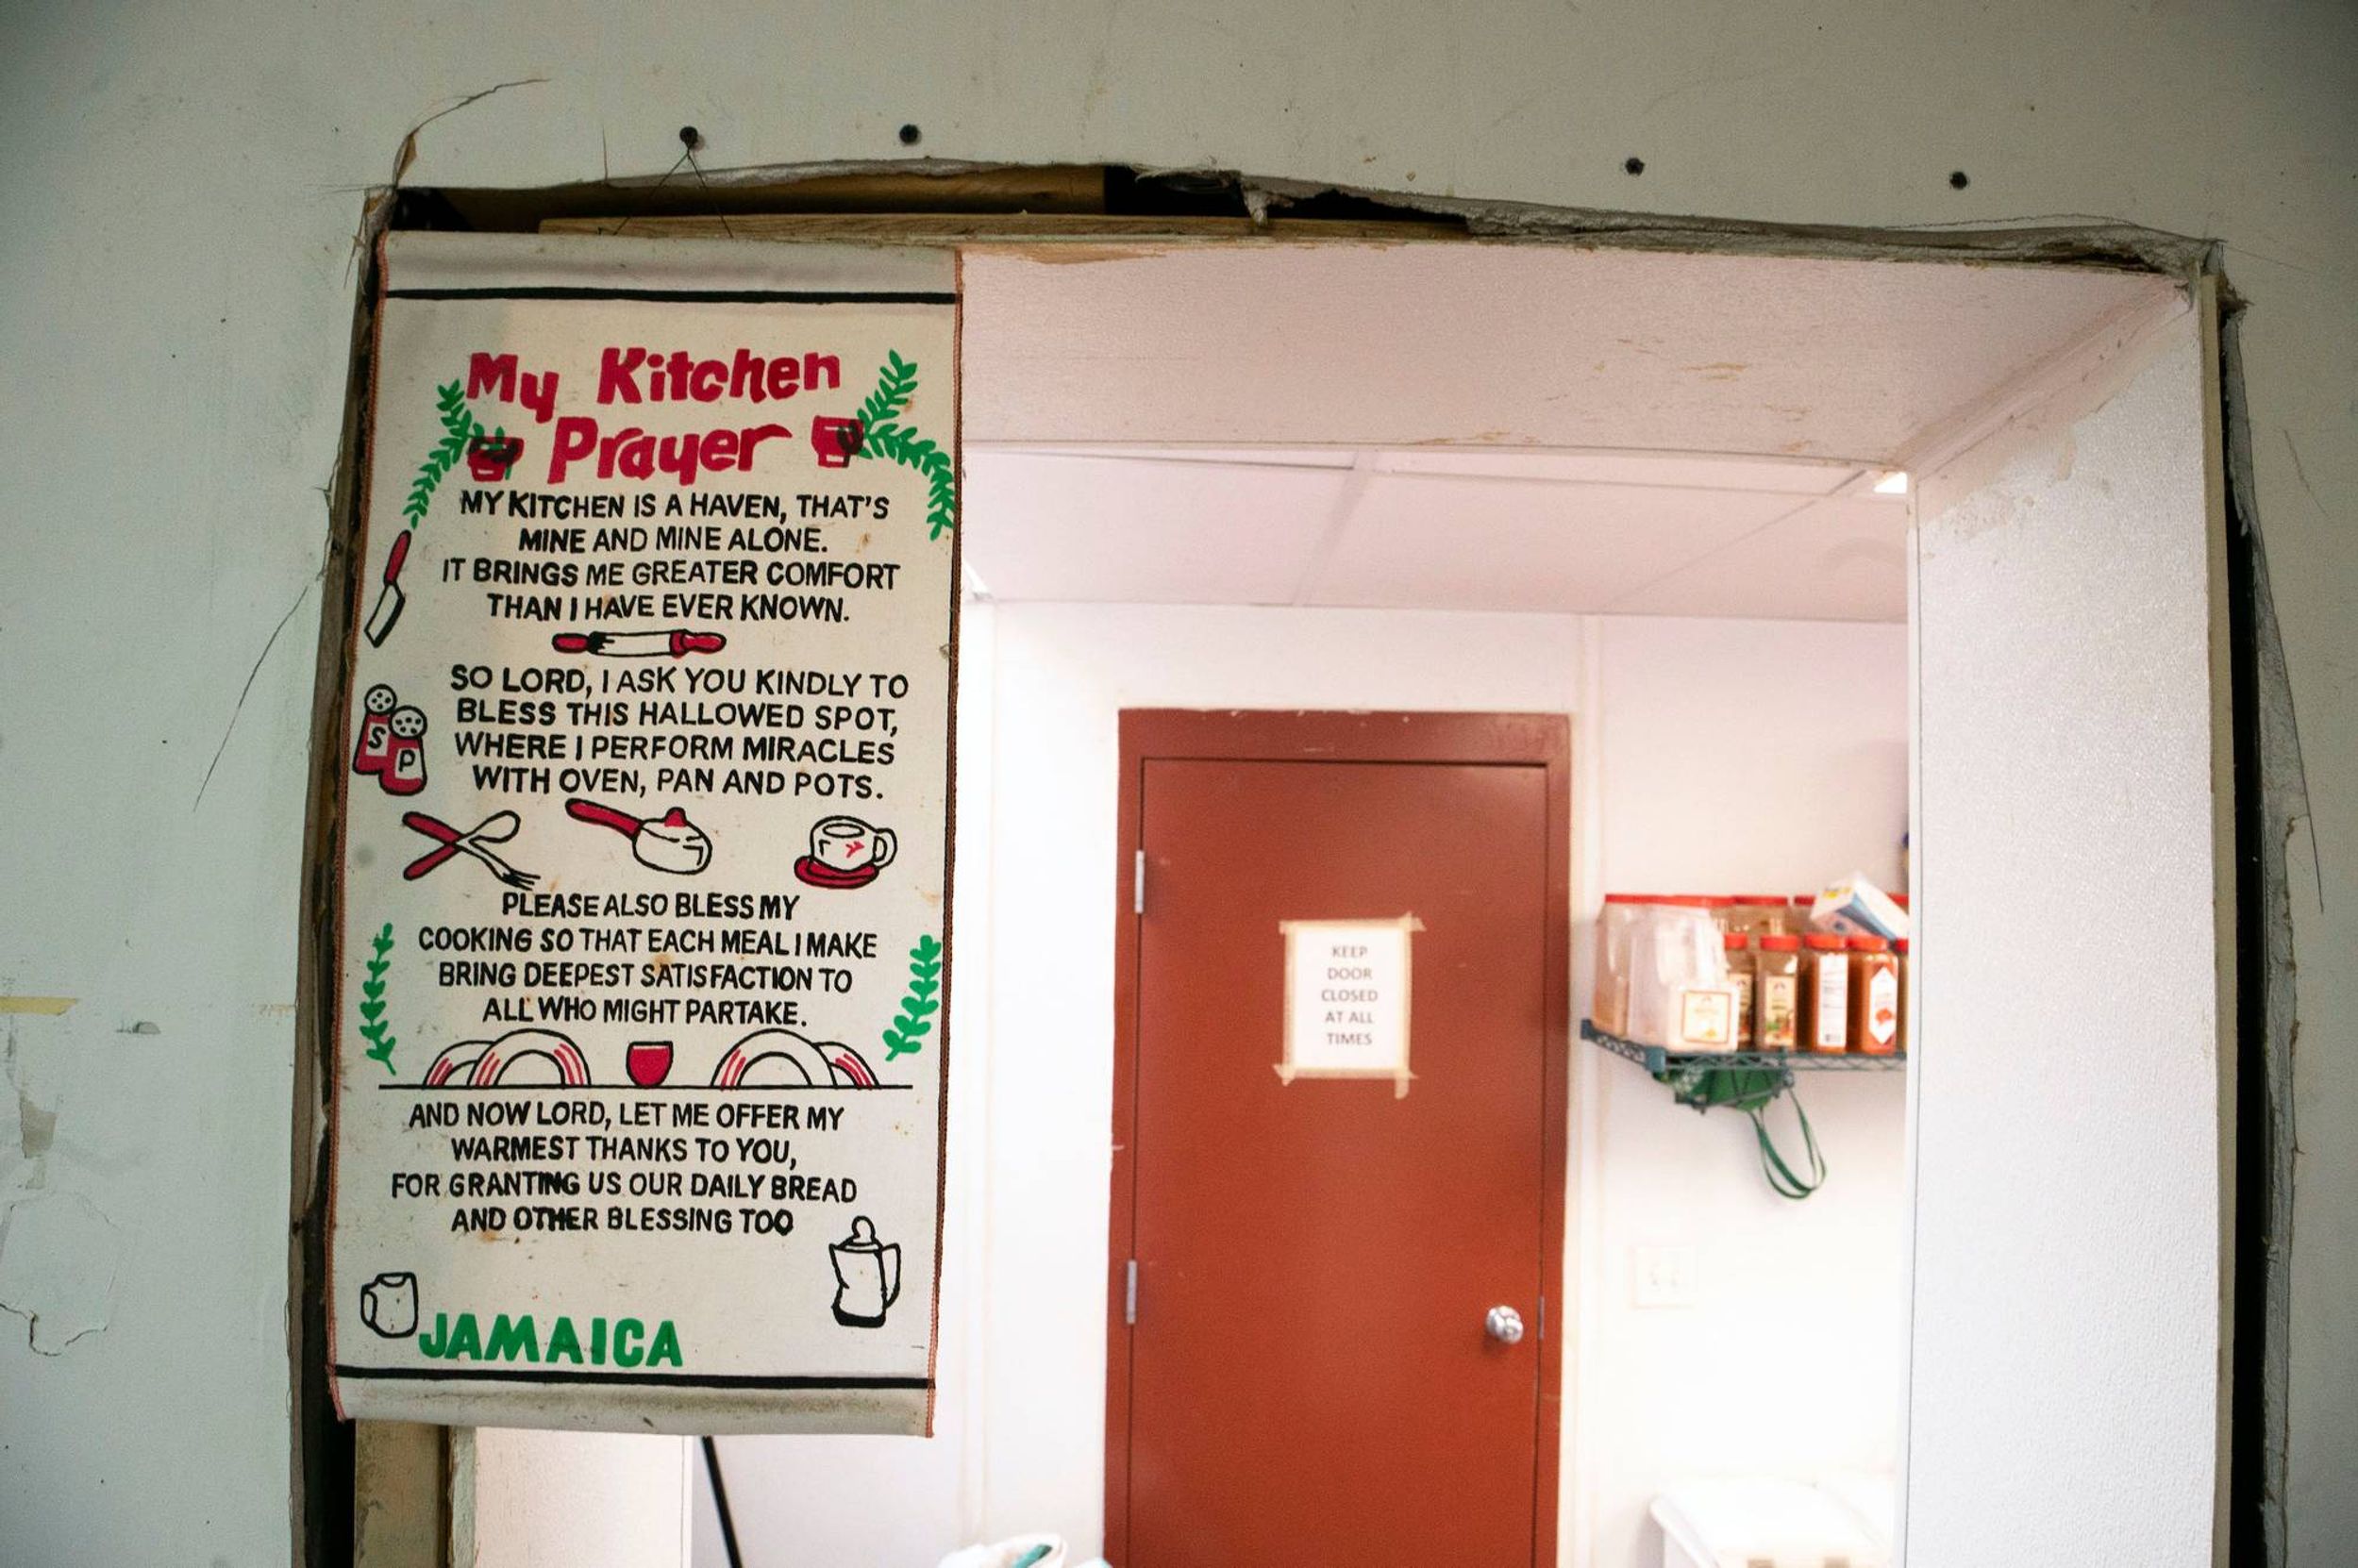 A poster of "My Kitchen Prayer" hangs near a service door.